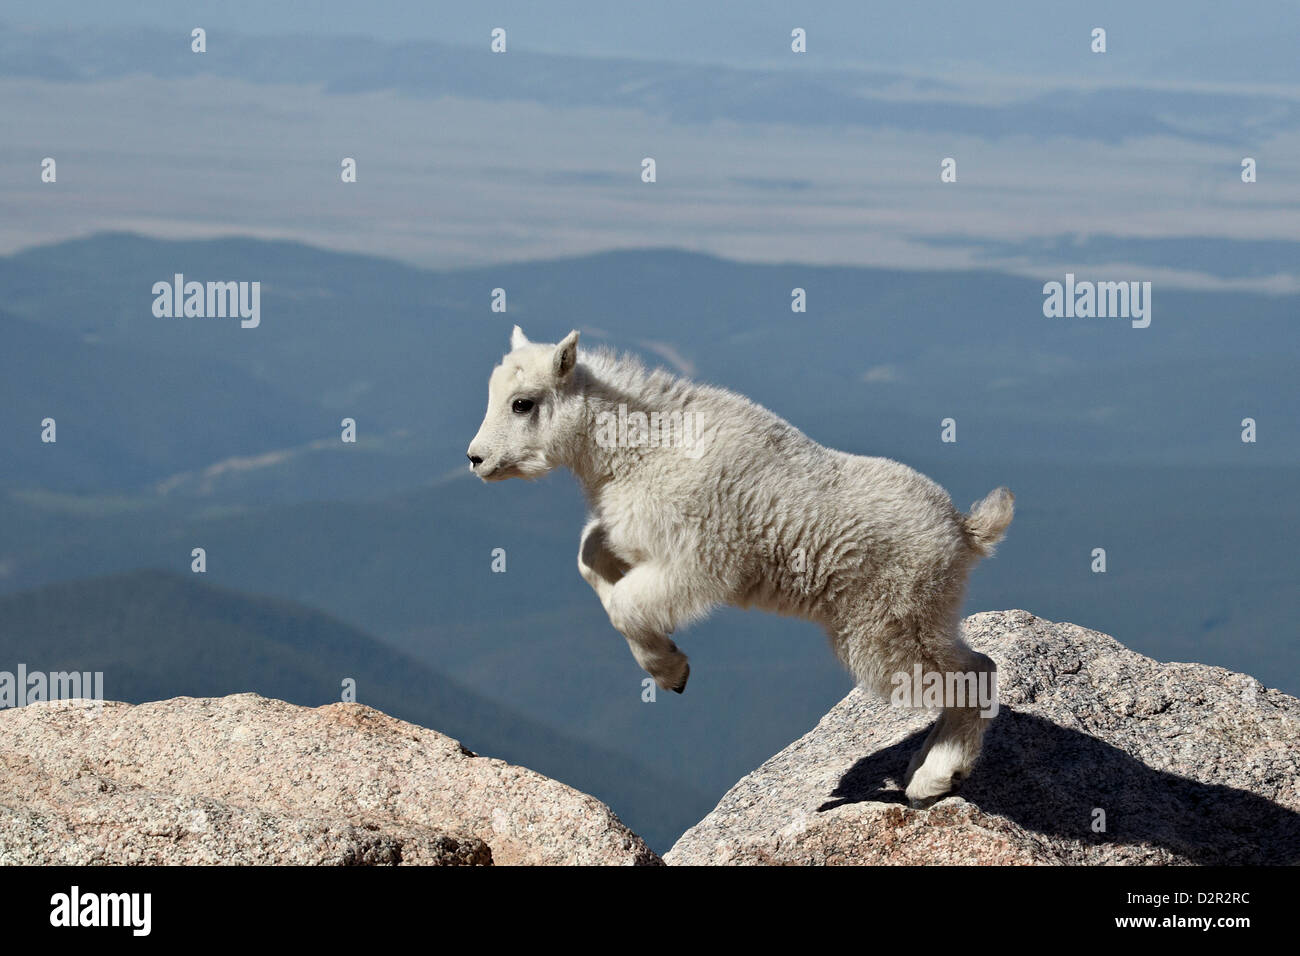 La chèvre de montagne (Oreamnos americanus) kid jumping, Mount Evans, Arapaho-Roosevelt National Forest, Colorado, USA Banque D'Images